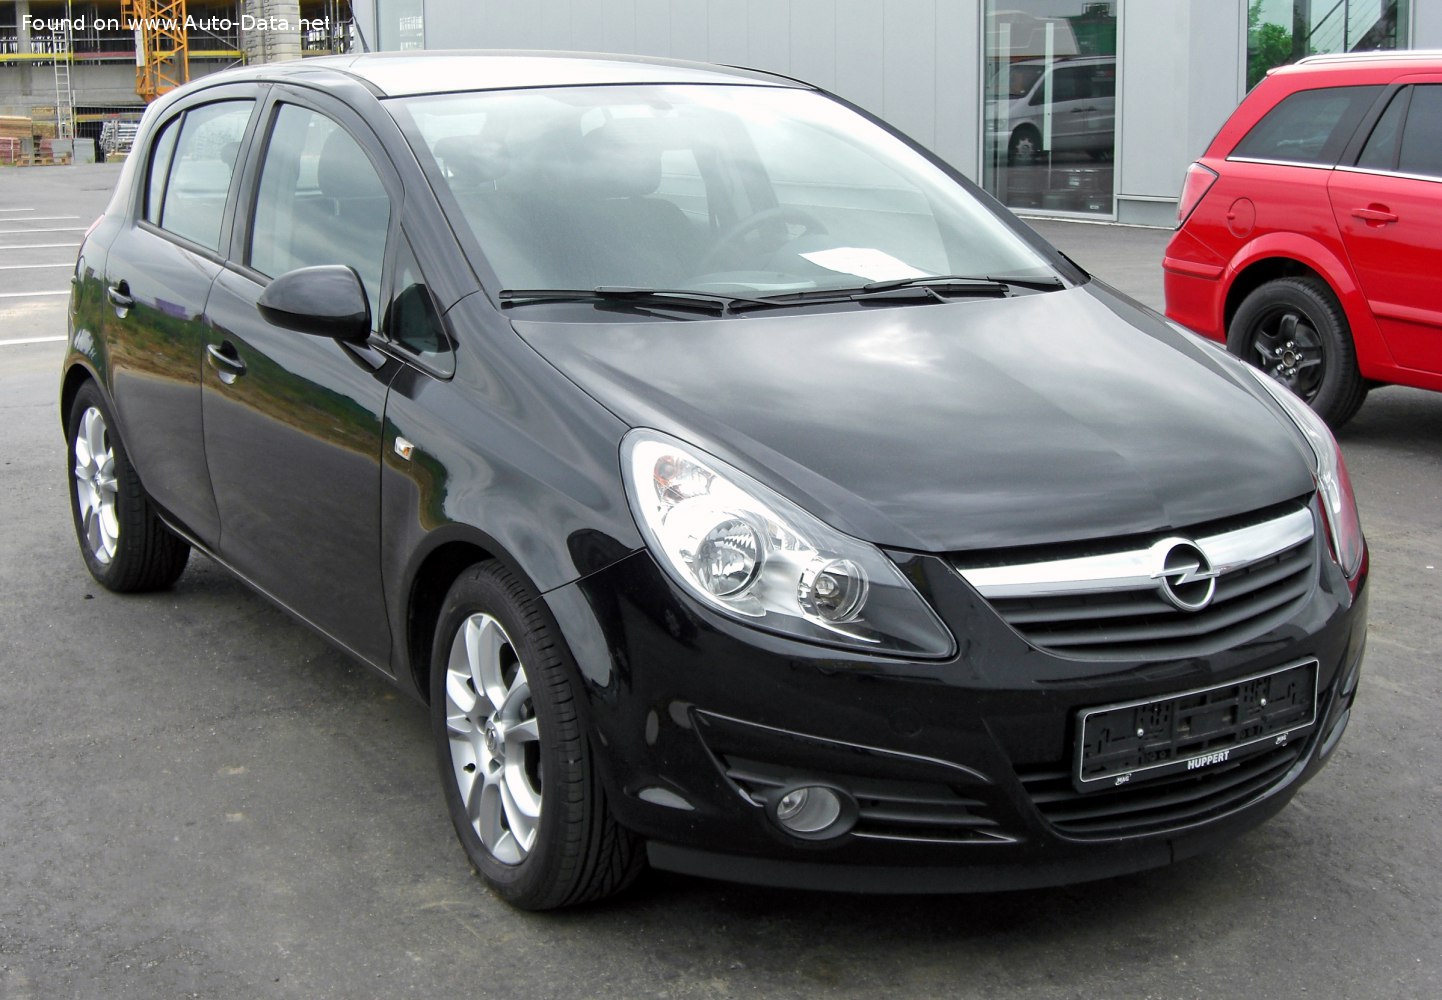 Opel Corsa D, Baujahr 2006 bis 2014 ▻ Technische Daten zu allen